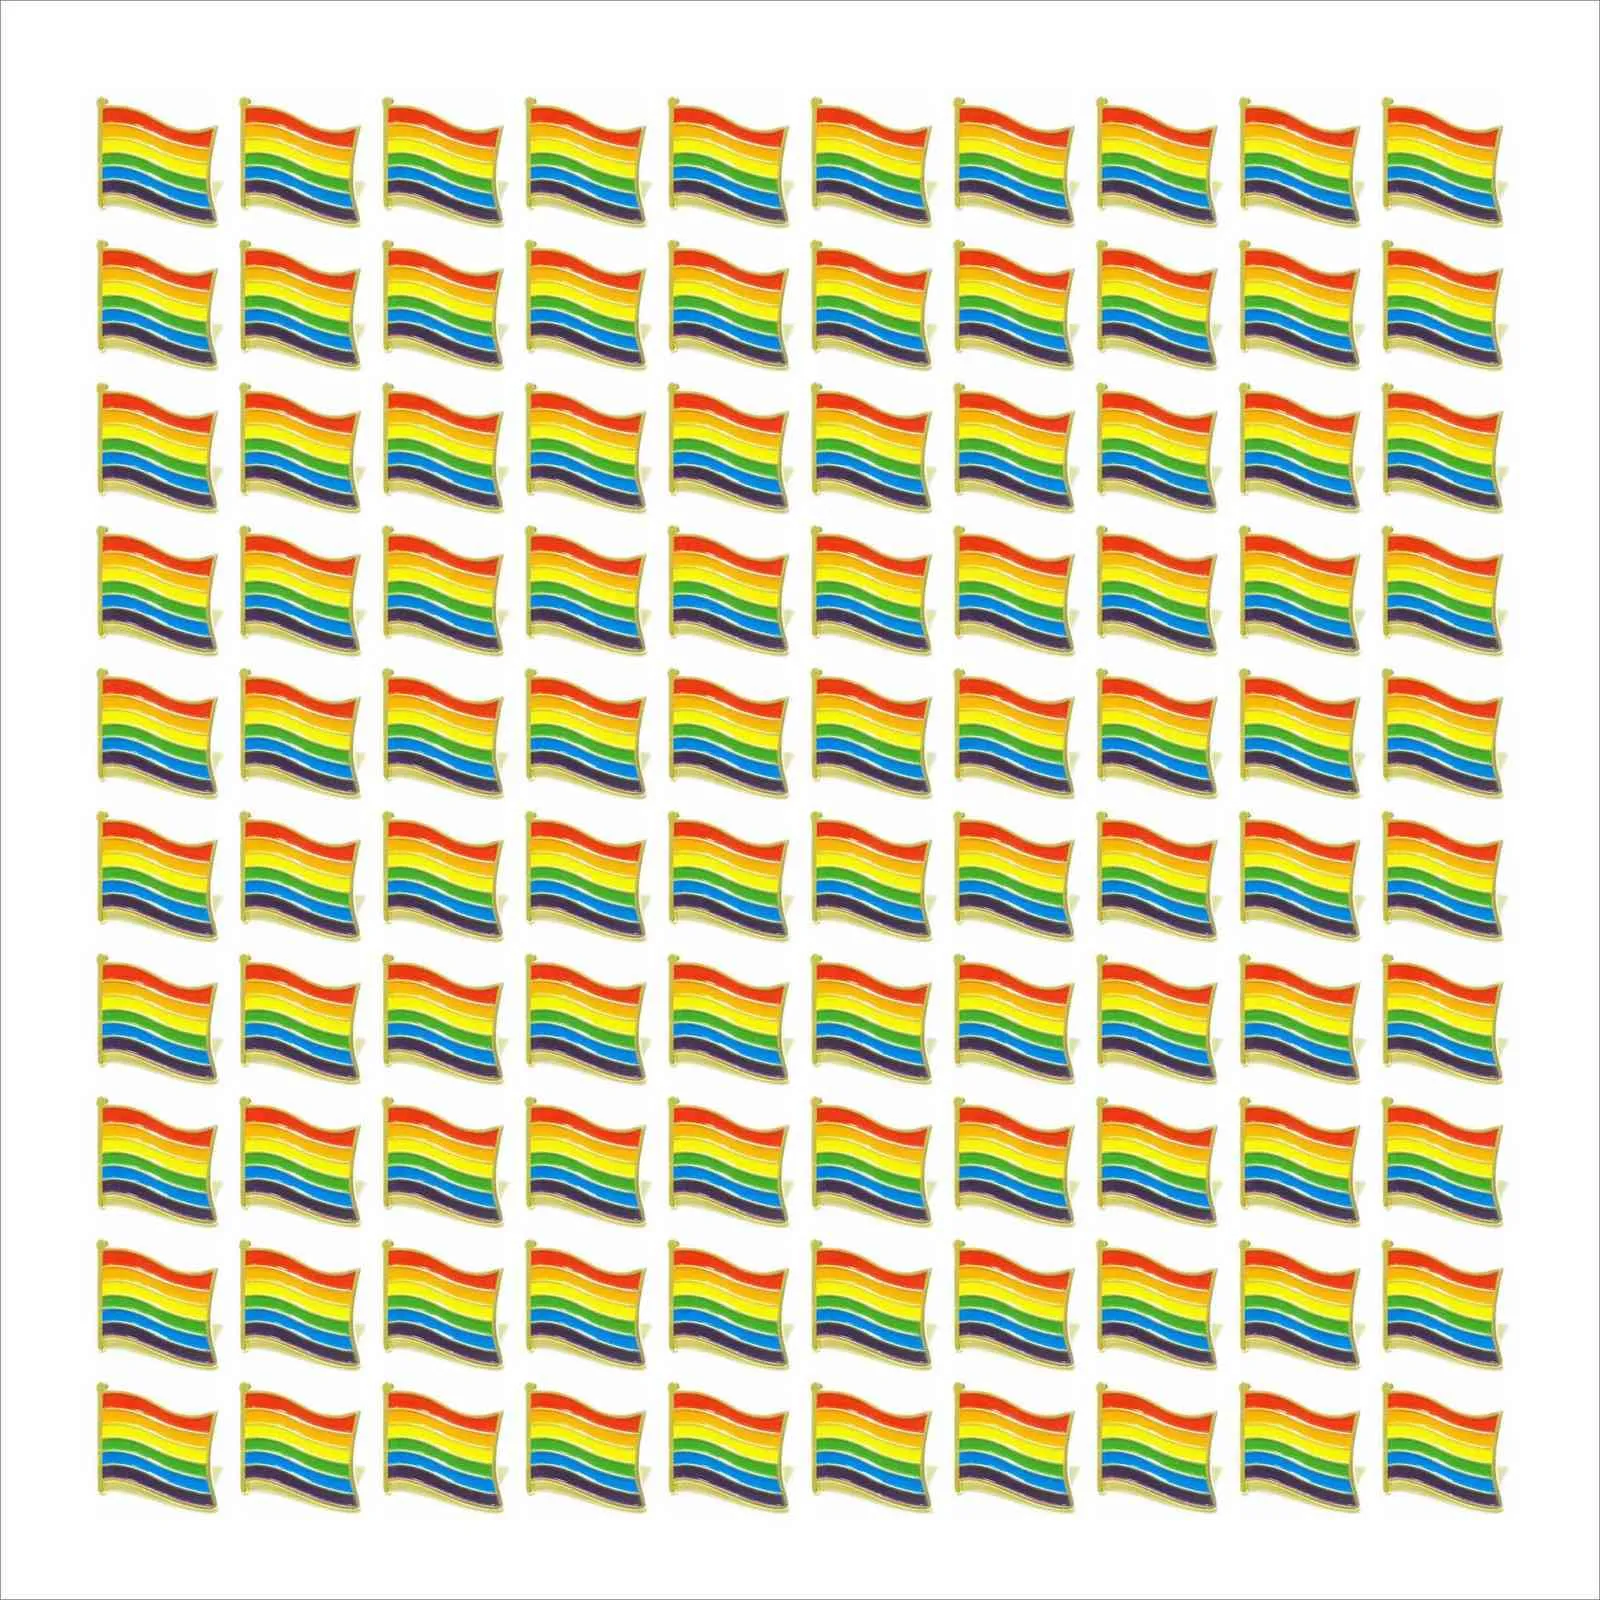 Großhandel 100 stücke Gay Pride Pins LGBTQ Rainbow Flagge Brosche Pins Für Kleidung Tasche Dekoration H1018